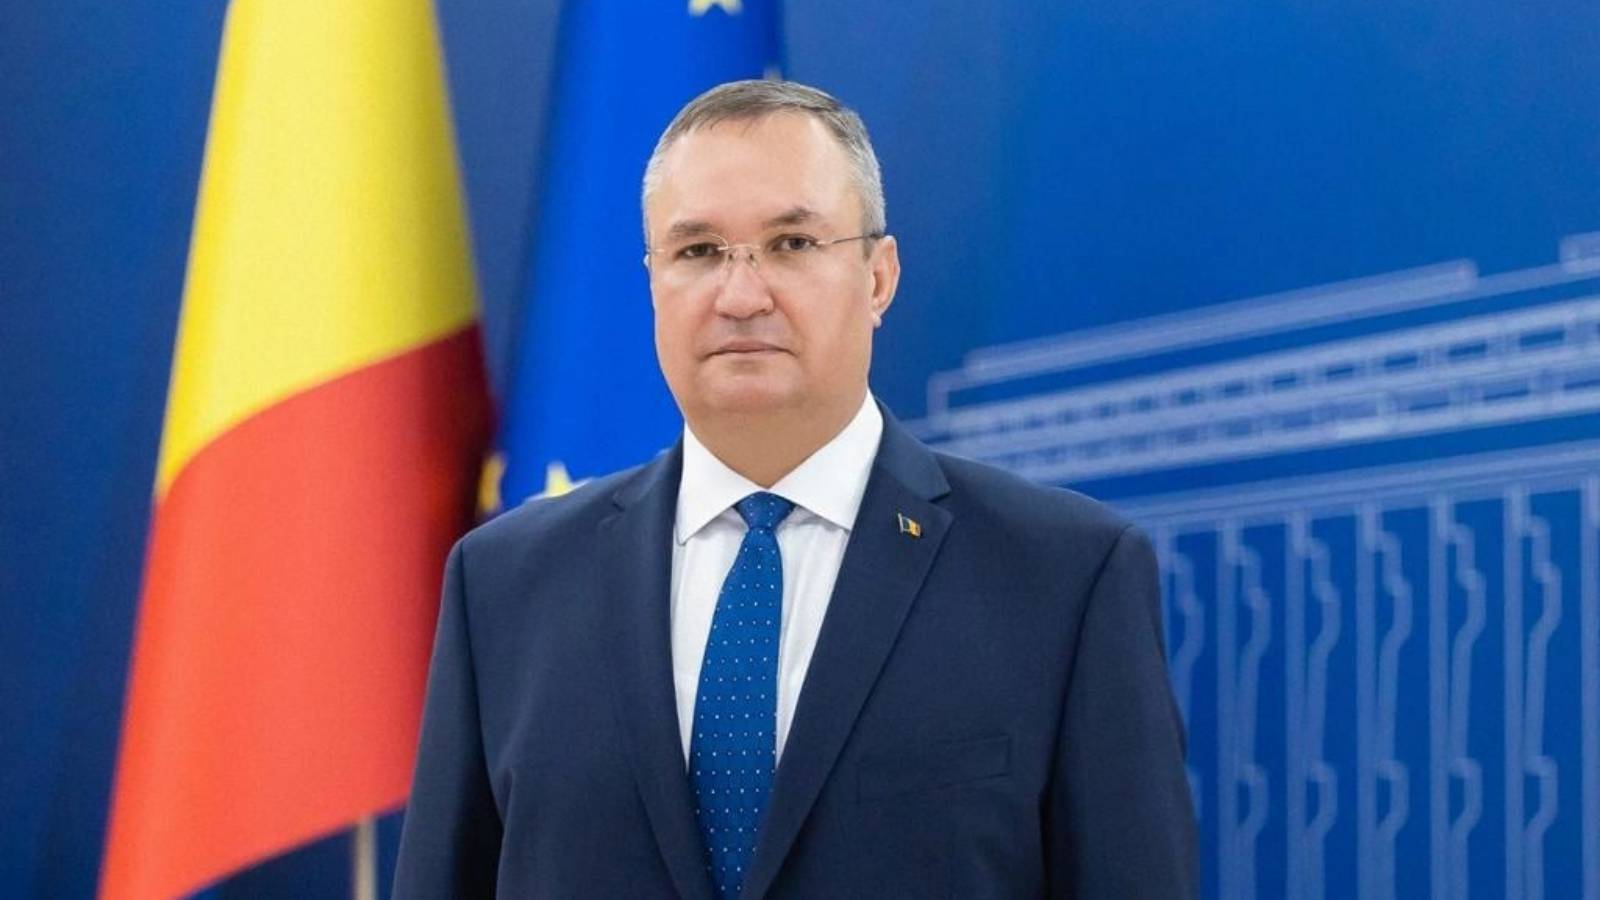 Romania are Cea mai Mare Crestere Economica din UE, Conform Premierului Nicolae Ciuca